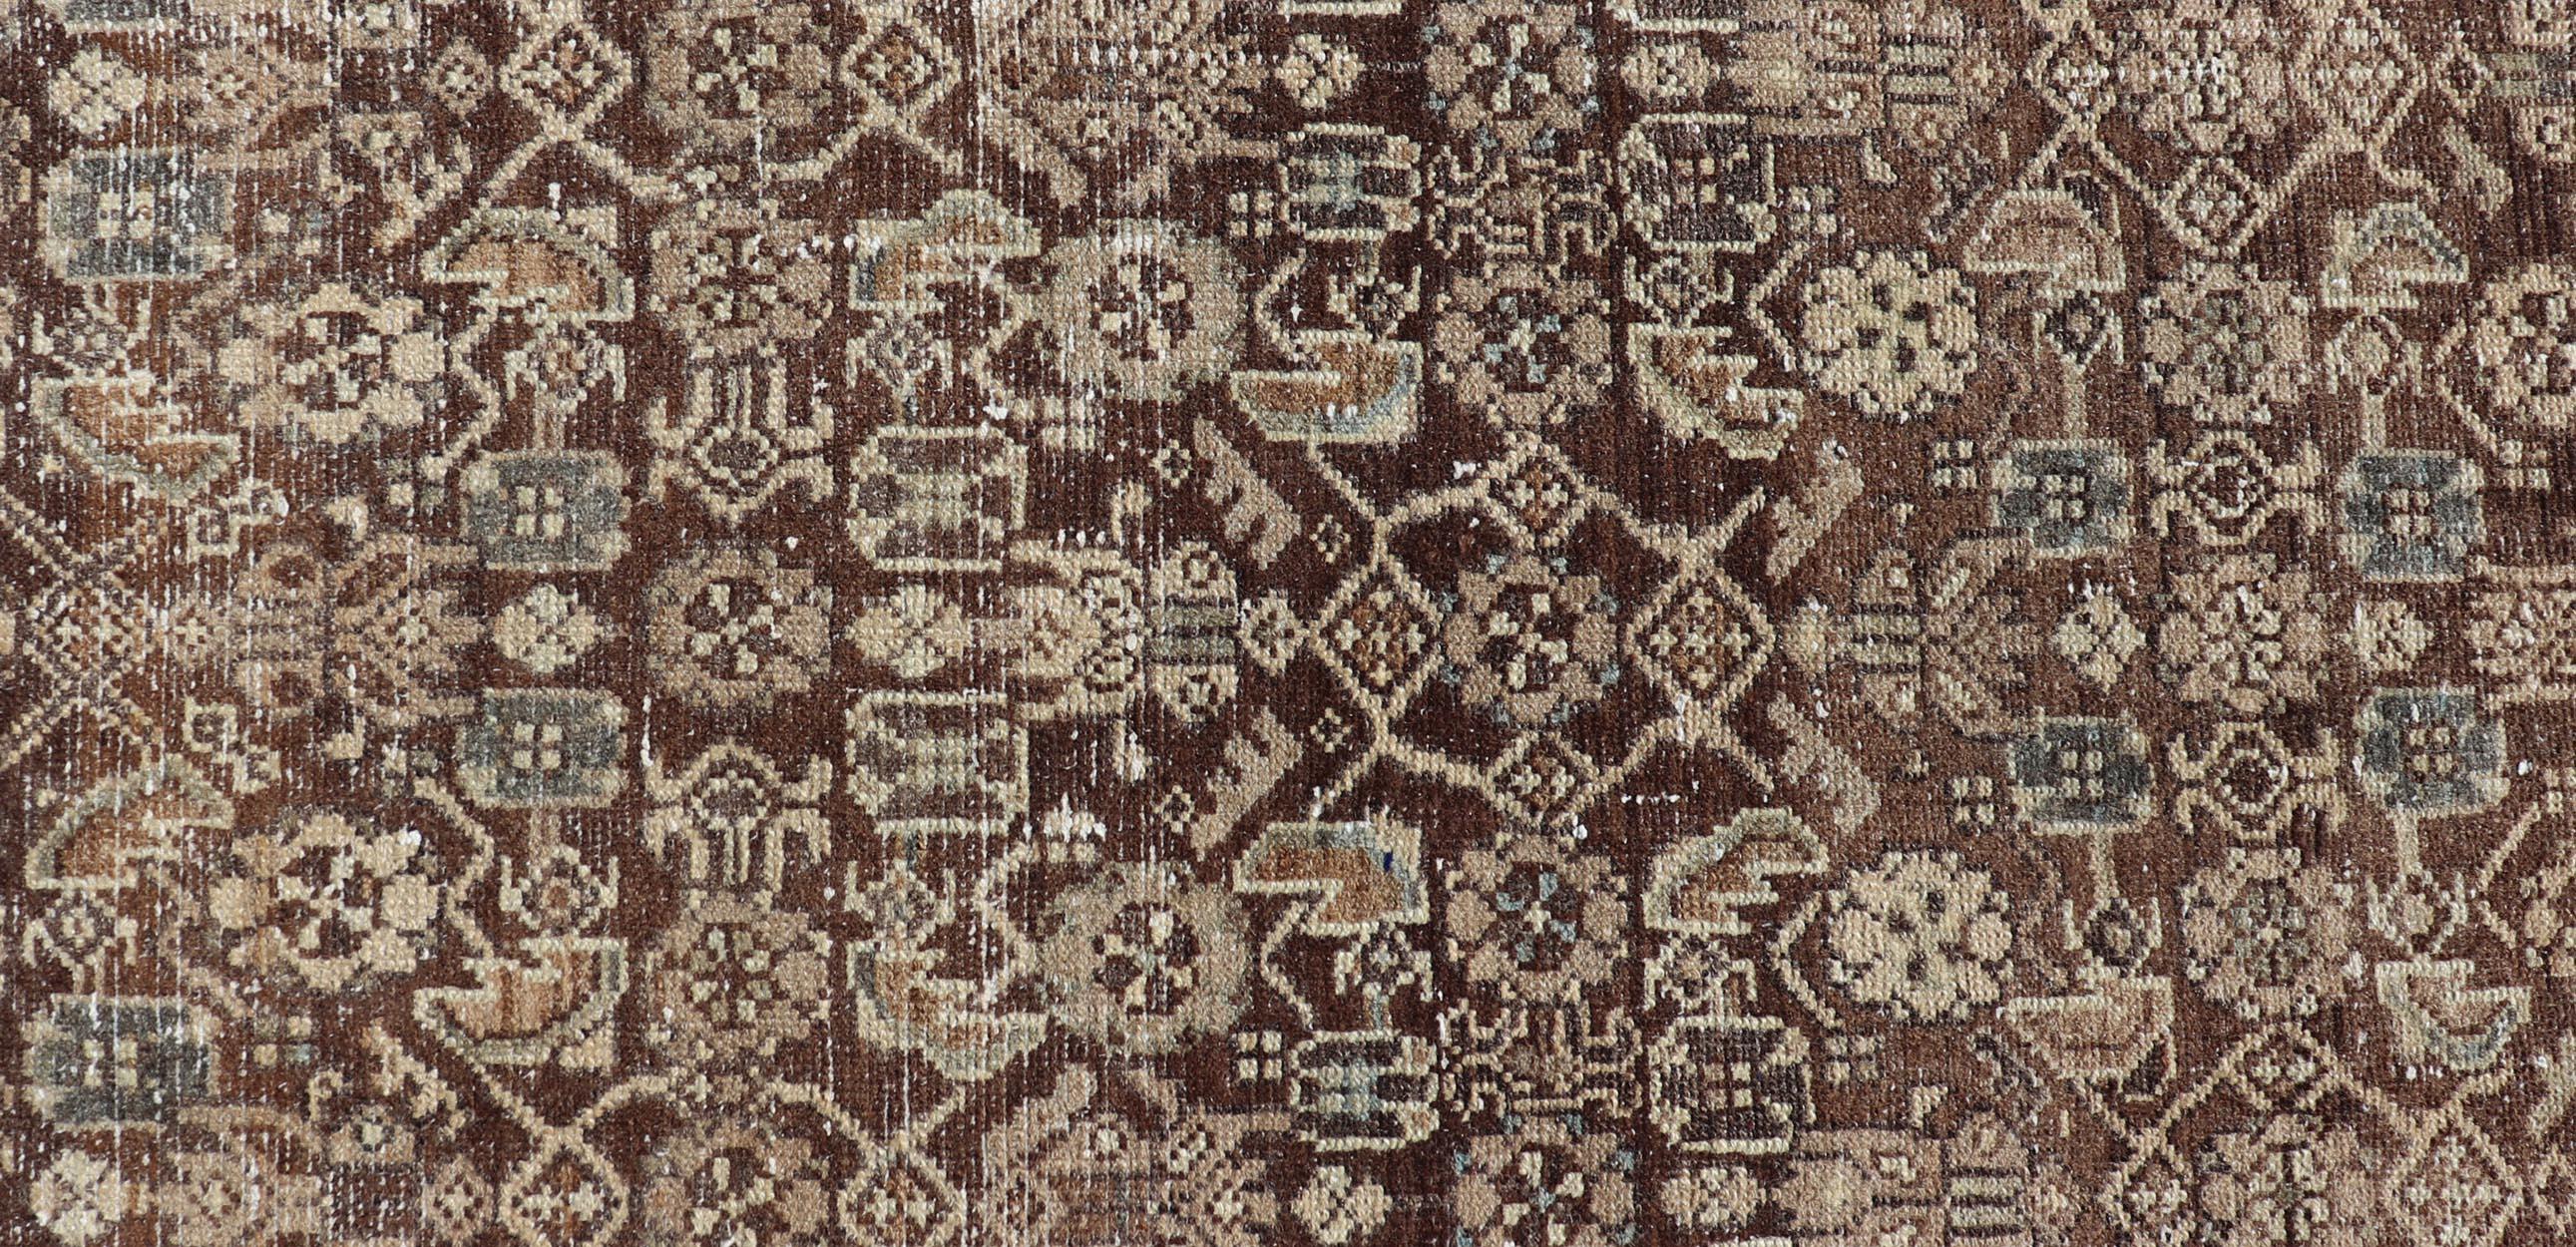 Mesures : 2'8 x 13'2 

Ce chemin de table persan ancien présente une palette de marron, crème, camel et des accents de bleu clair. Le motif floral subgéométrique couvre l'ensemble du fond de cacao. La bordure crème présente un motif floral stylisé